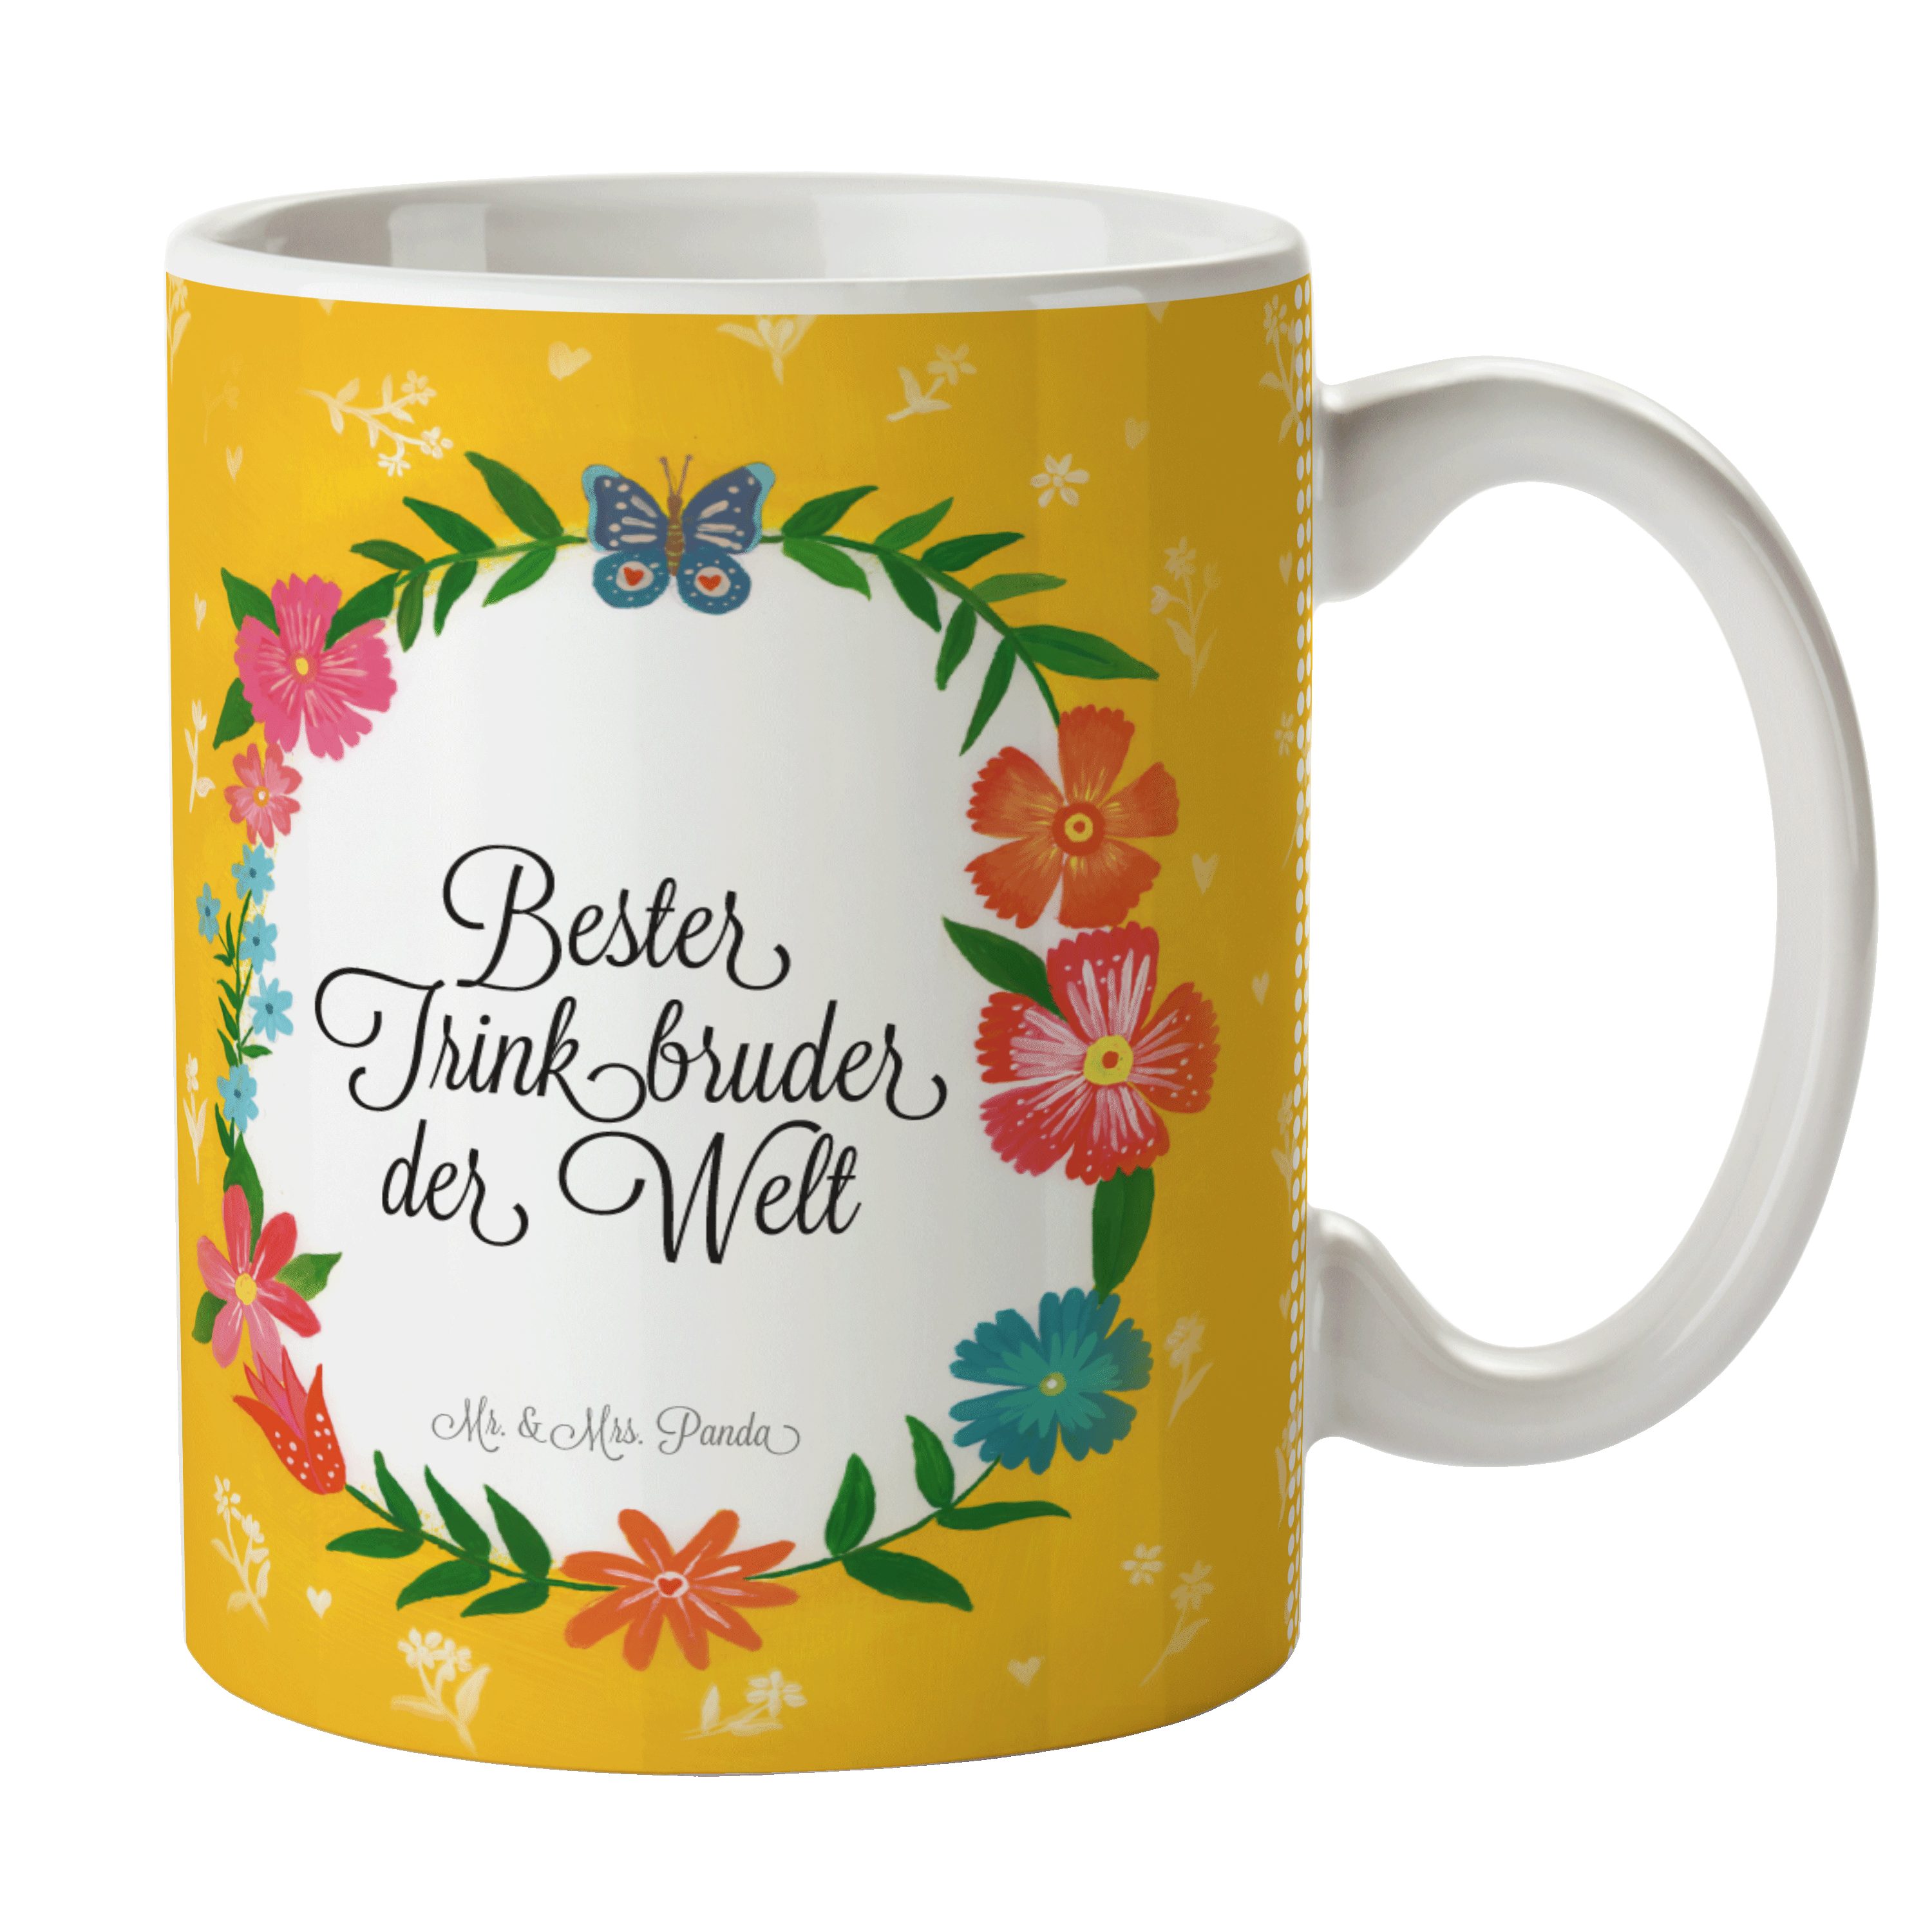 Mr. & Mrs. Panda Tasse Trinkbruder - Geschenk, Trinken, Tasse Motive, Geschenk Tasse, Kaffee, Keramik